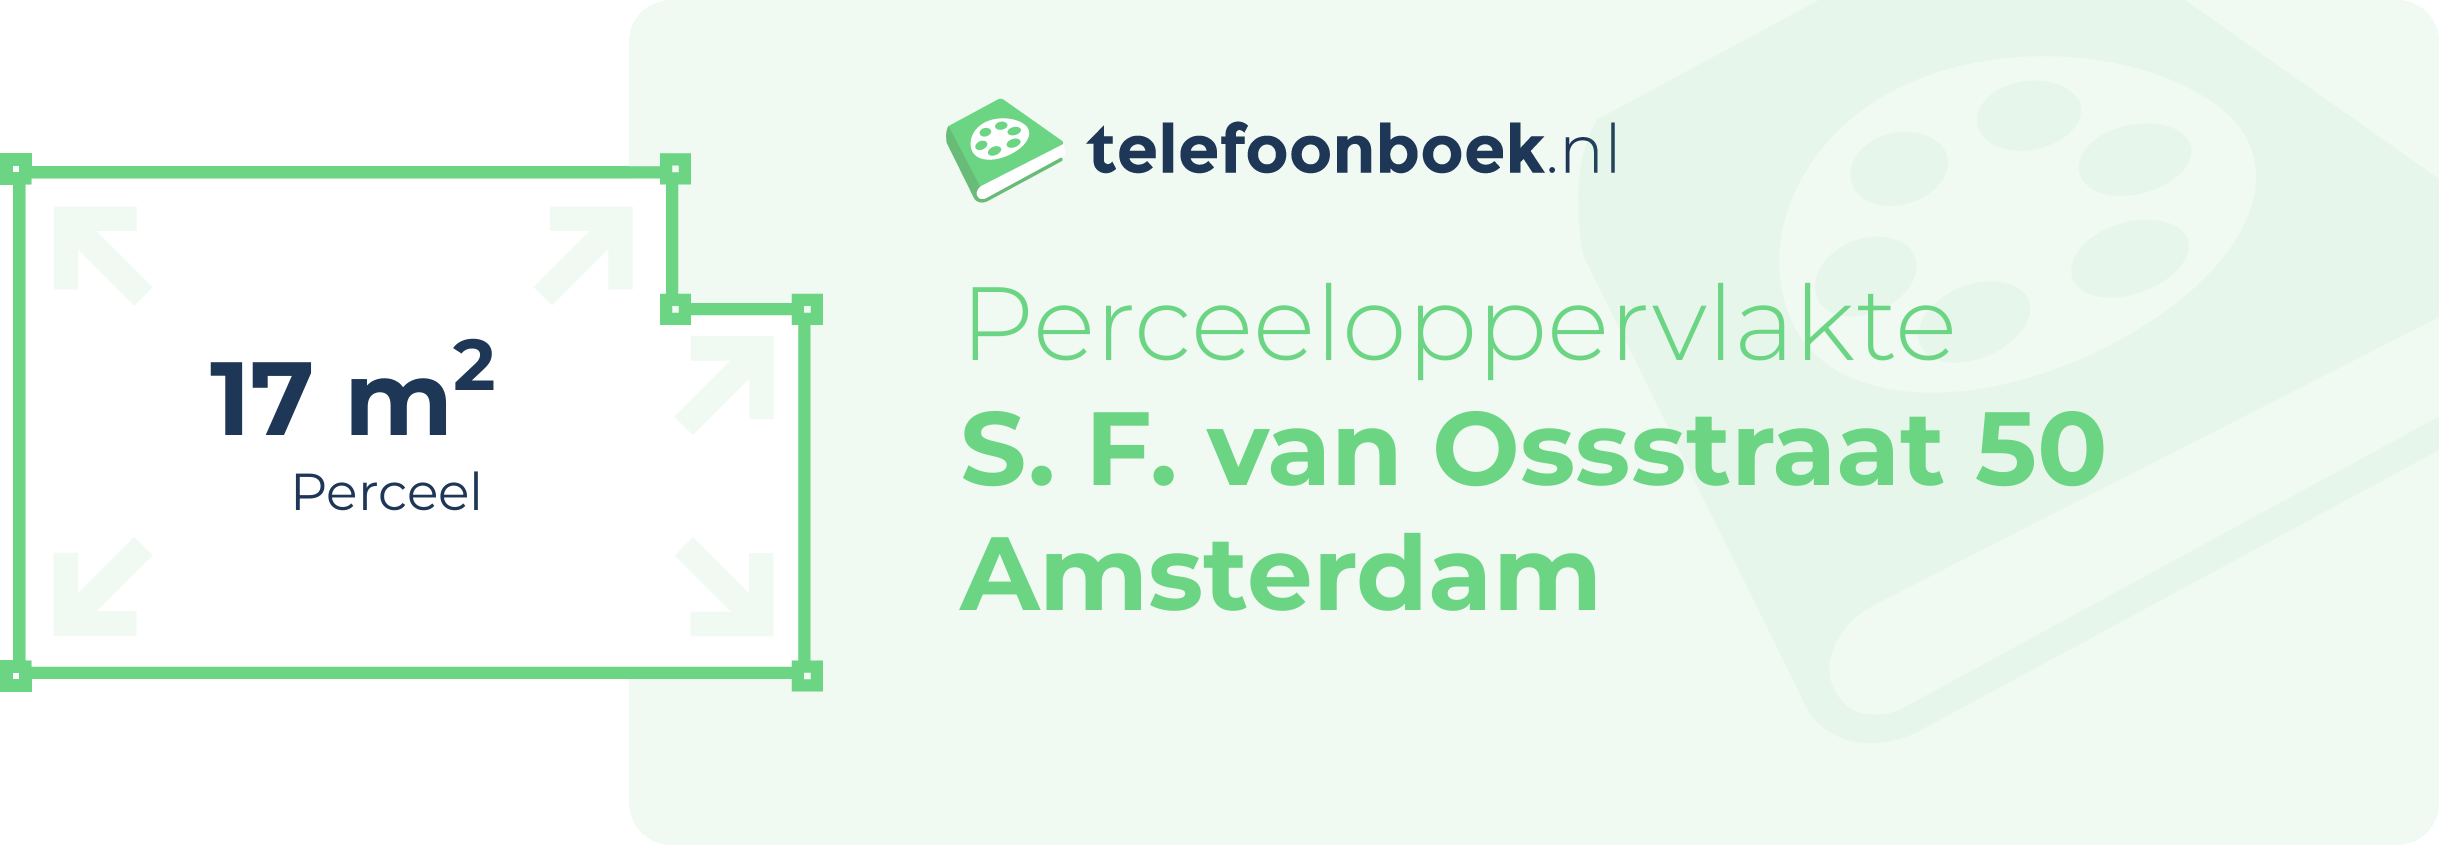 Perceeloppervlakte S. F. Van Ossstraat 50 Amsterdam